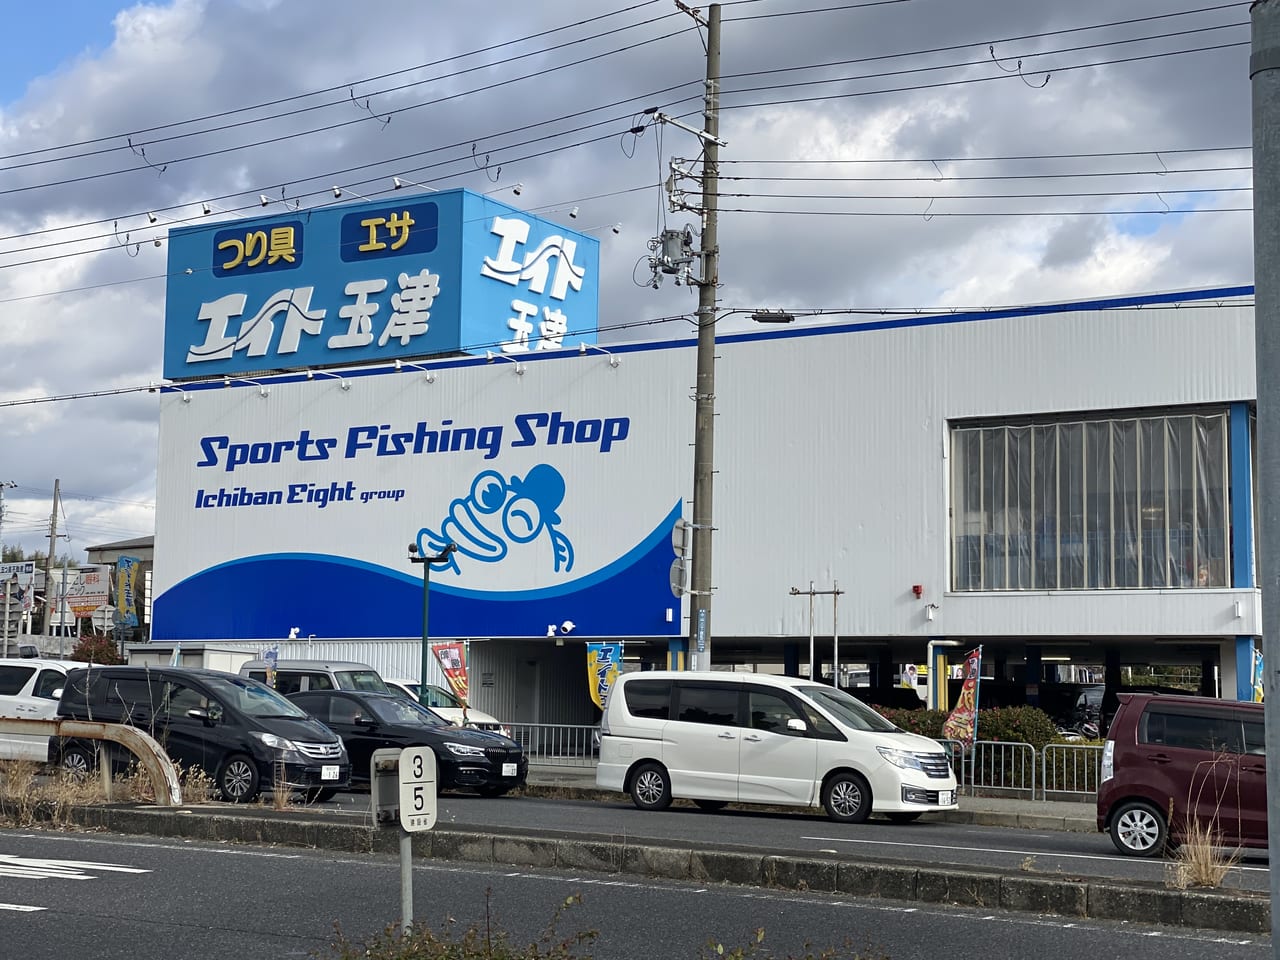 神戸市西区 空前の釣りブーム エイト玉津店は21年も大盛況で元日から行列が出来ていました セール情報などを調べました 号外net 神戸市西区